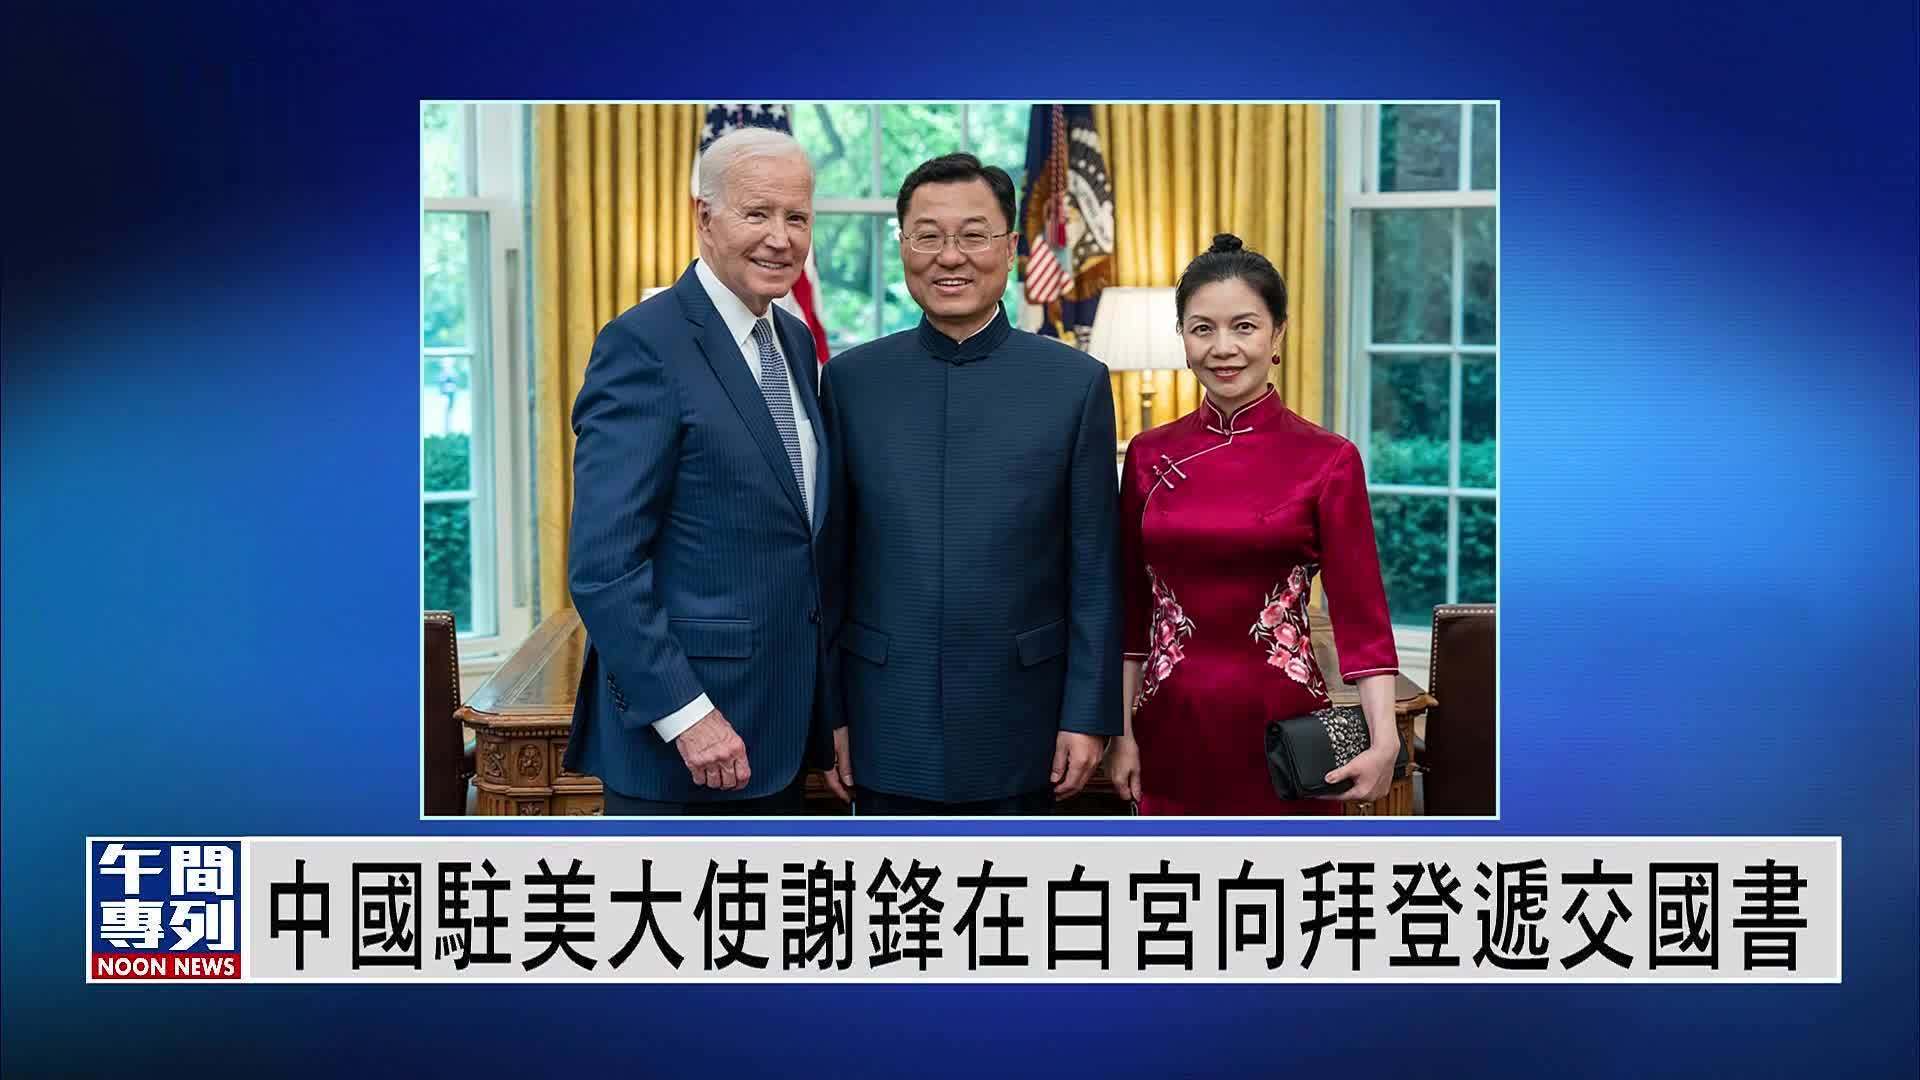 中国驻美大使谢锋在白宫向拜登递交国书